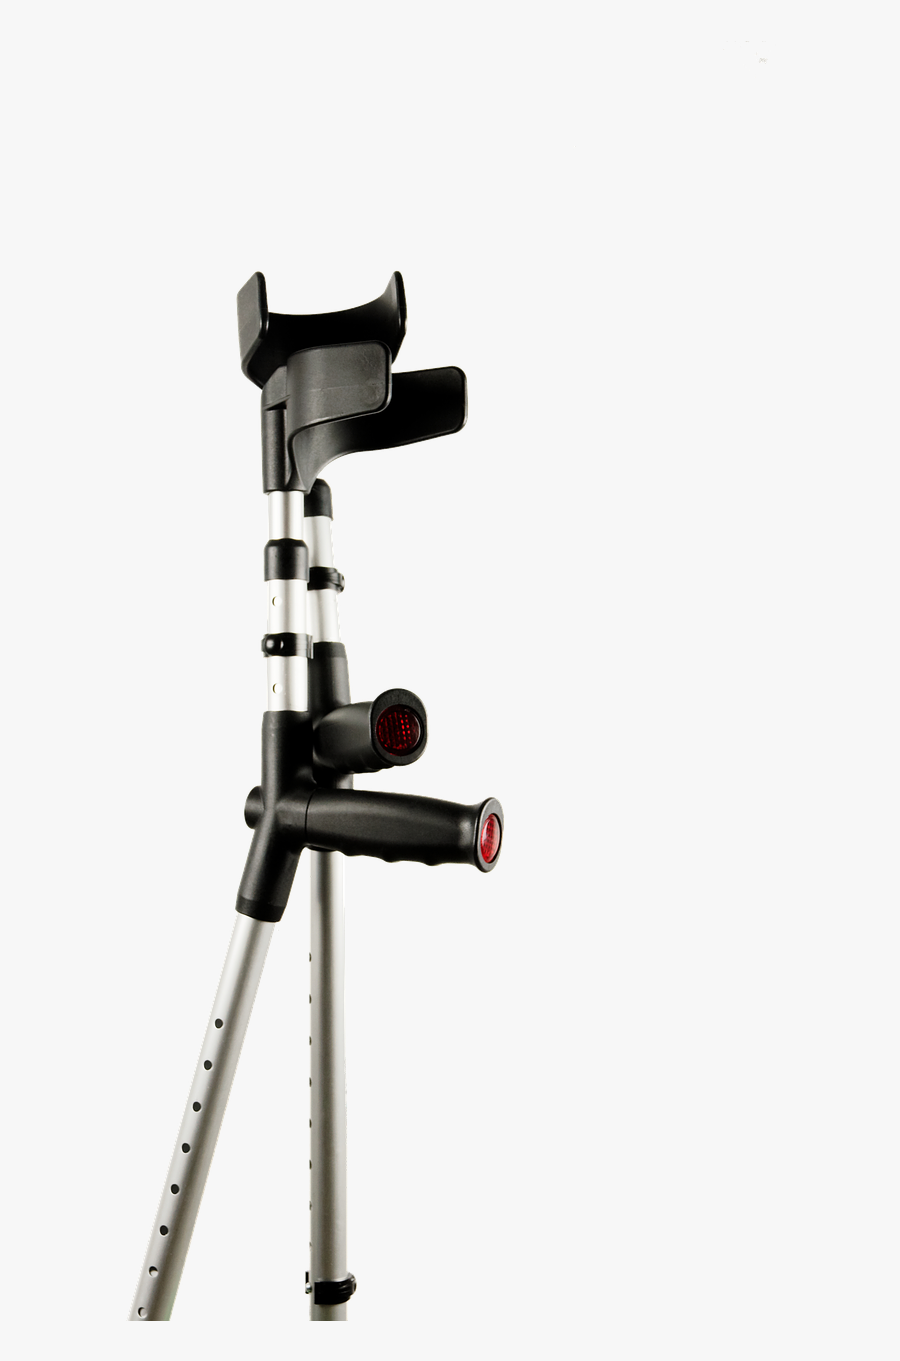 Walker Crutches Handicap Png Image - Crutch, Transparent Clipart